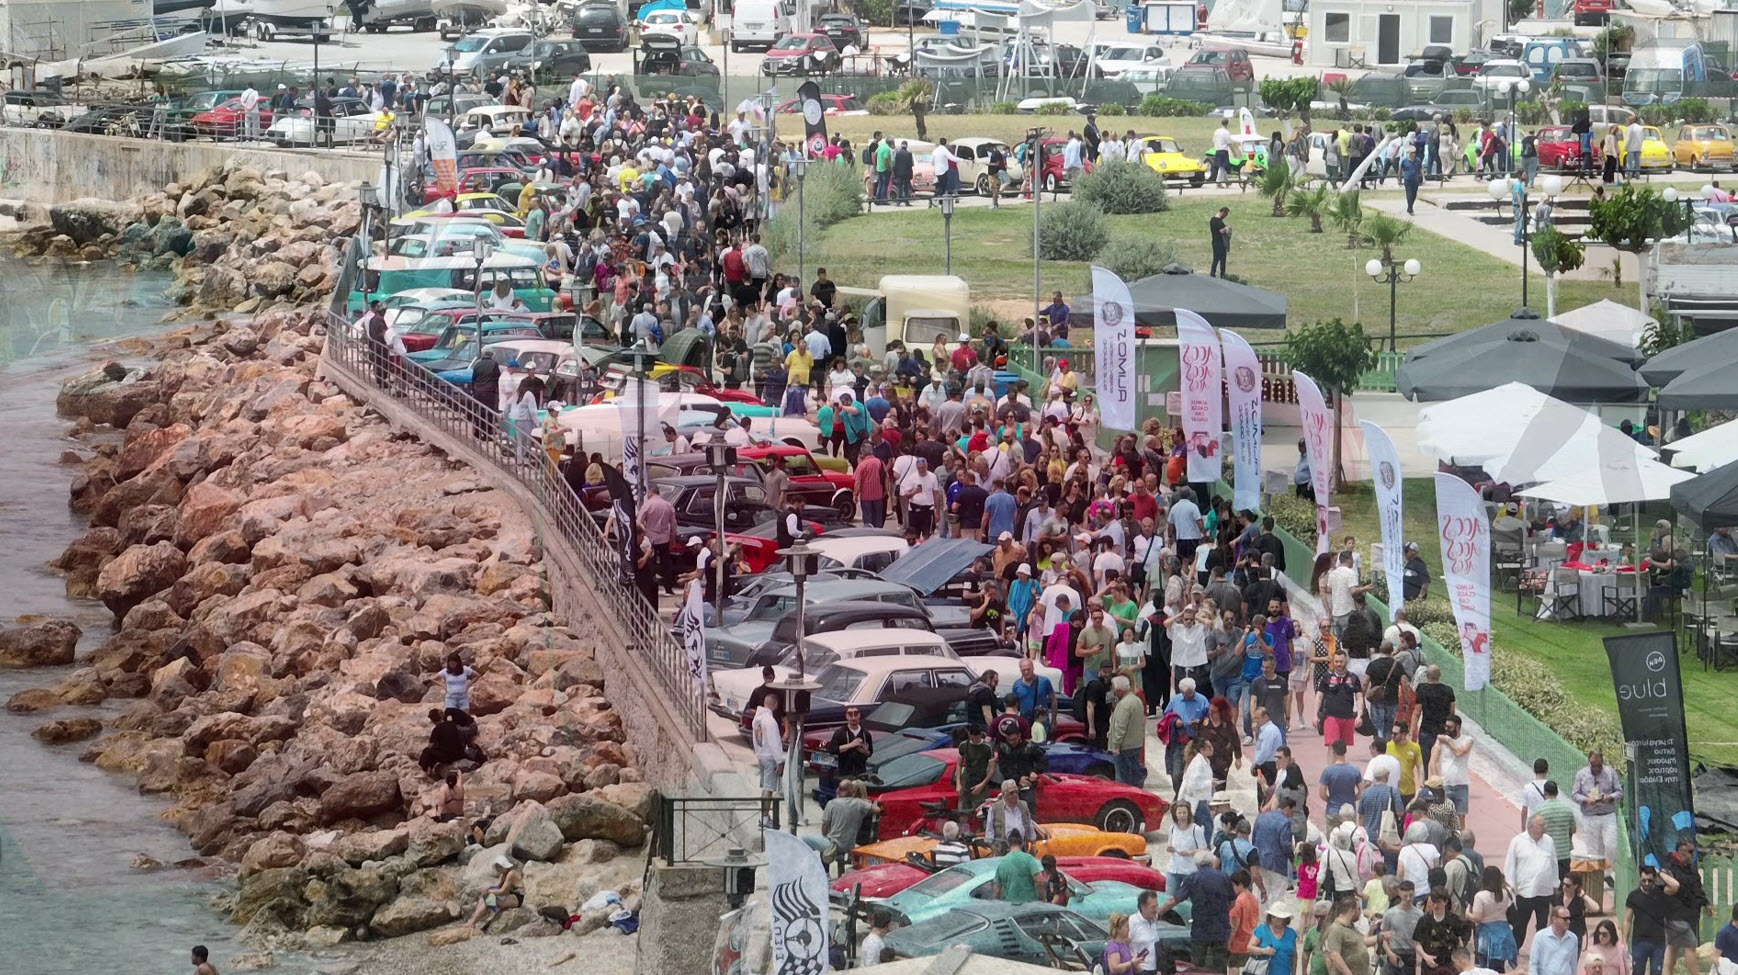 ACCS4: η γιορτή των κλασικών αυτοκινήτων στον Άλιμο που εντυπωσίασε χιλιάδες επισκέπτες